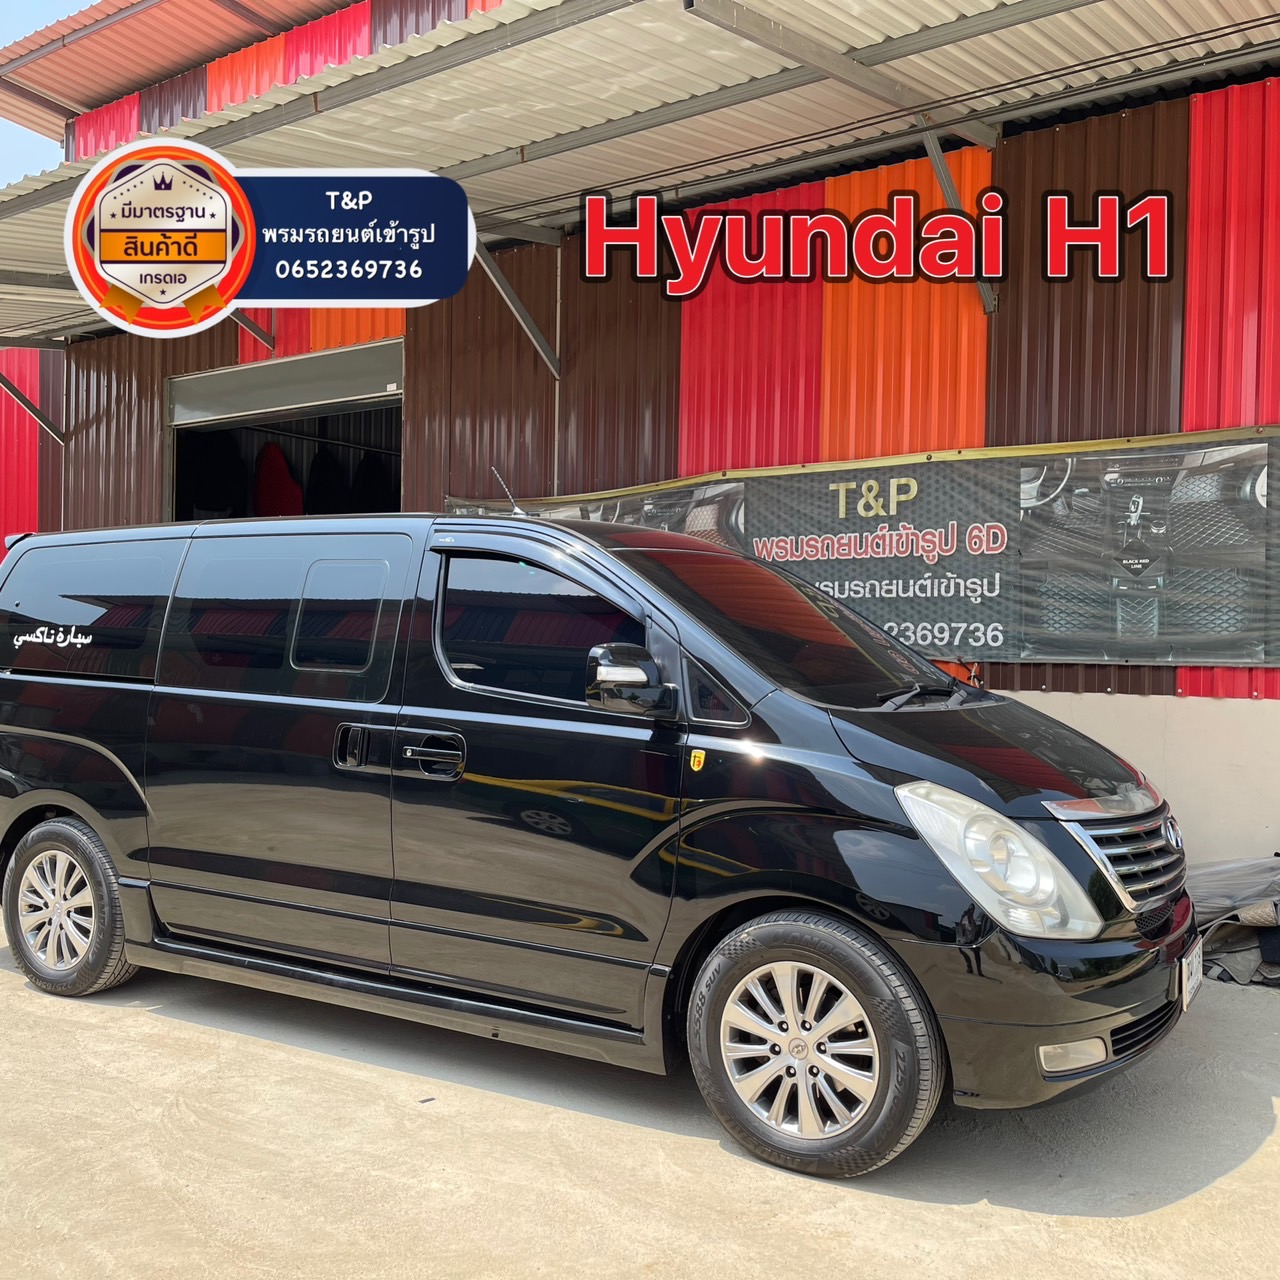 S 9257041 พรมรถยนต์ Hyundai H1